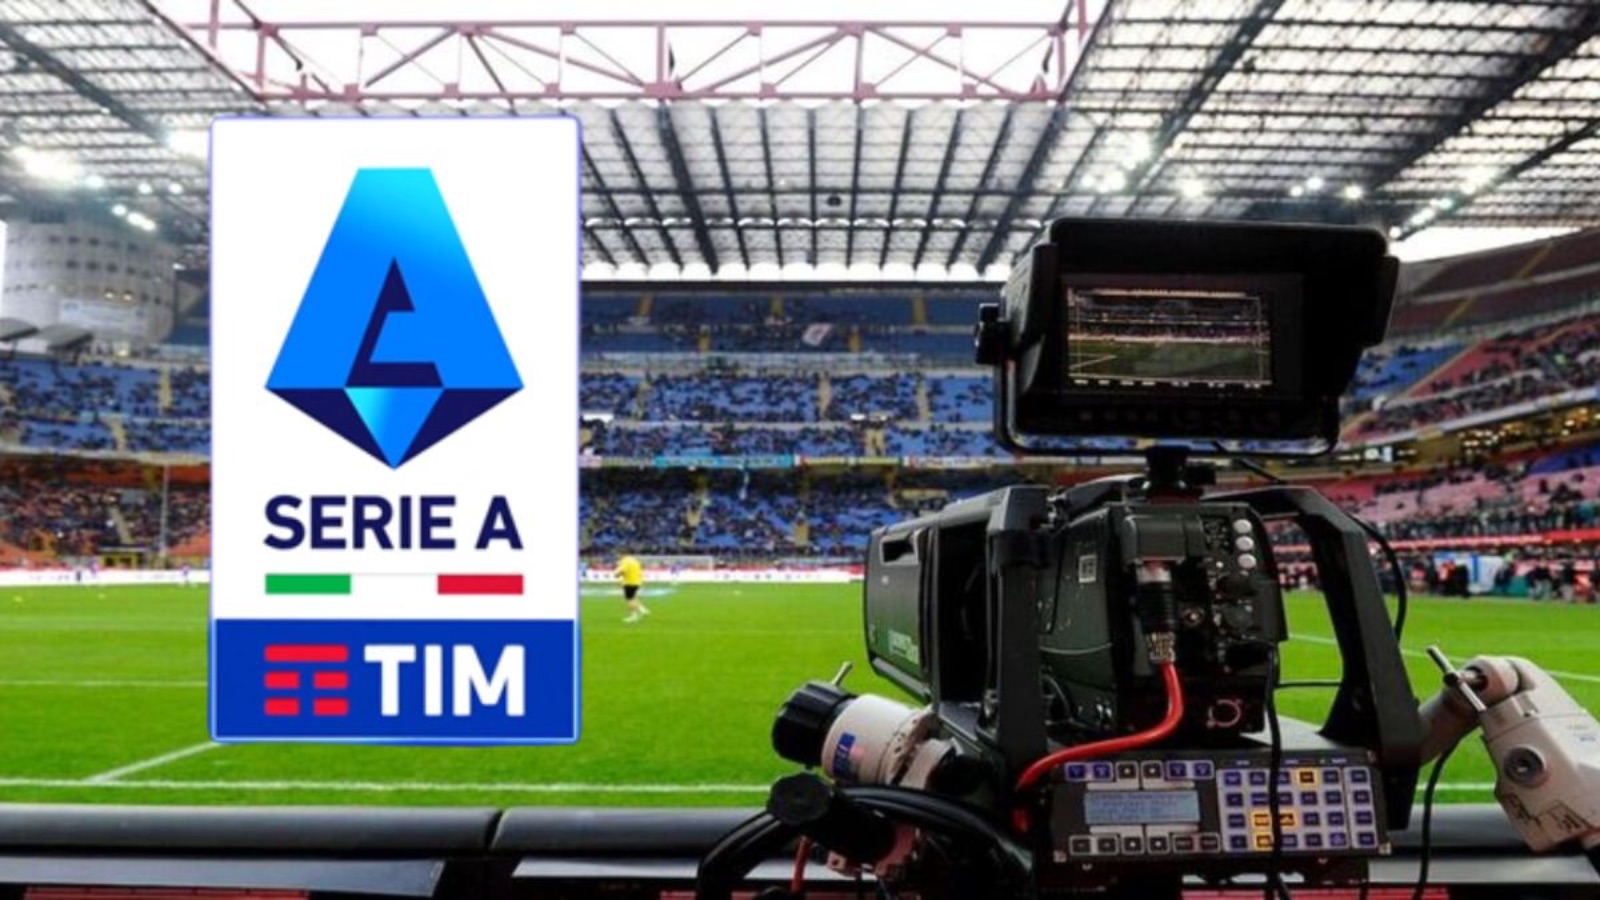 Finalmente l'accordo è arrivato per i diritti TV in merito alla Serie A: la situazione tra DAZN e Sky resterà invariata fino al 2029.